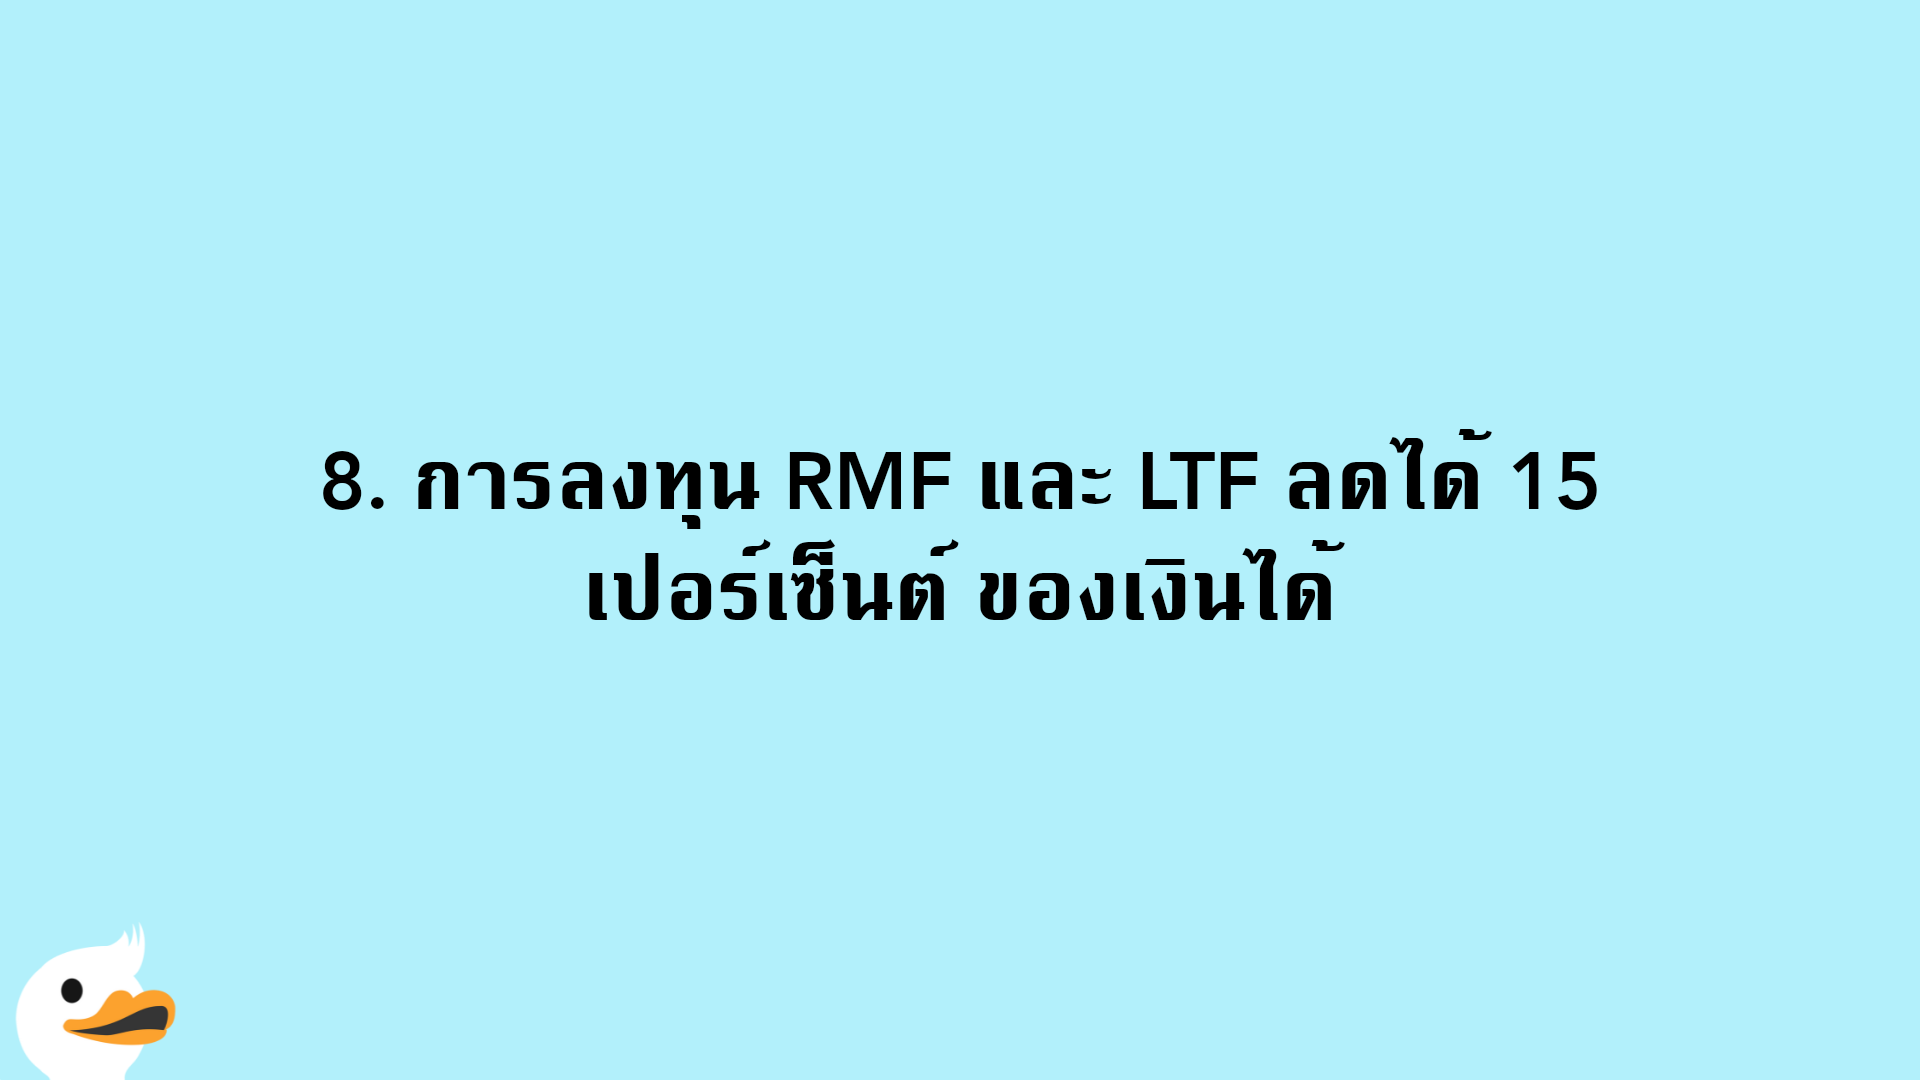 8. การลงทุน RMF และ LTF ลดได้ 15 เปอร์เซ็นต์ ของเงินได้